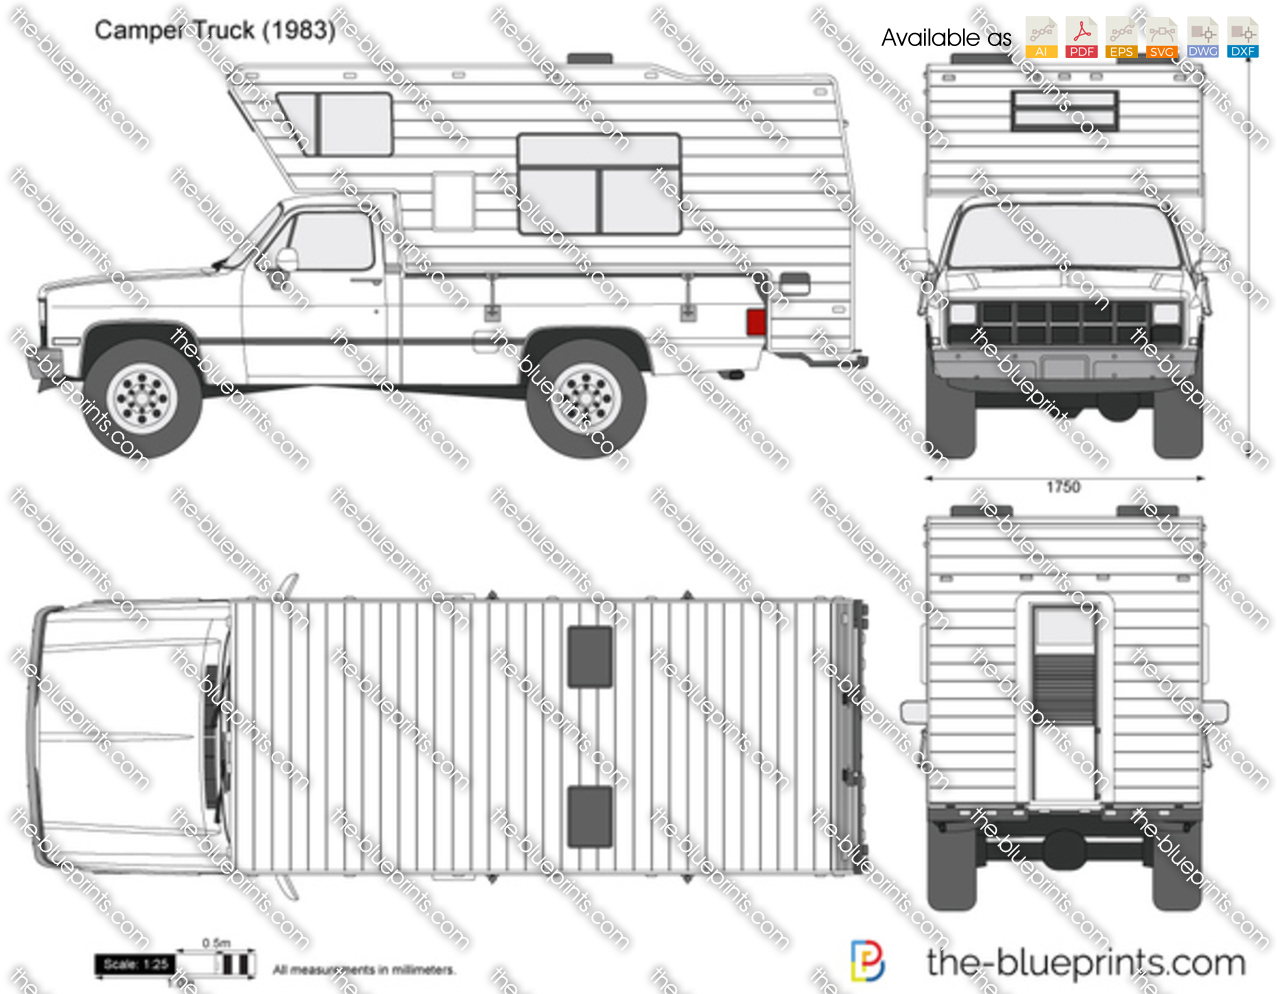 Camper Truck